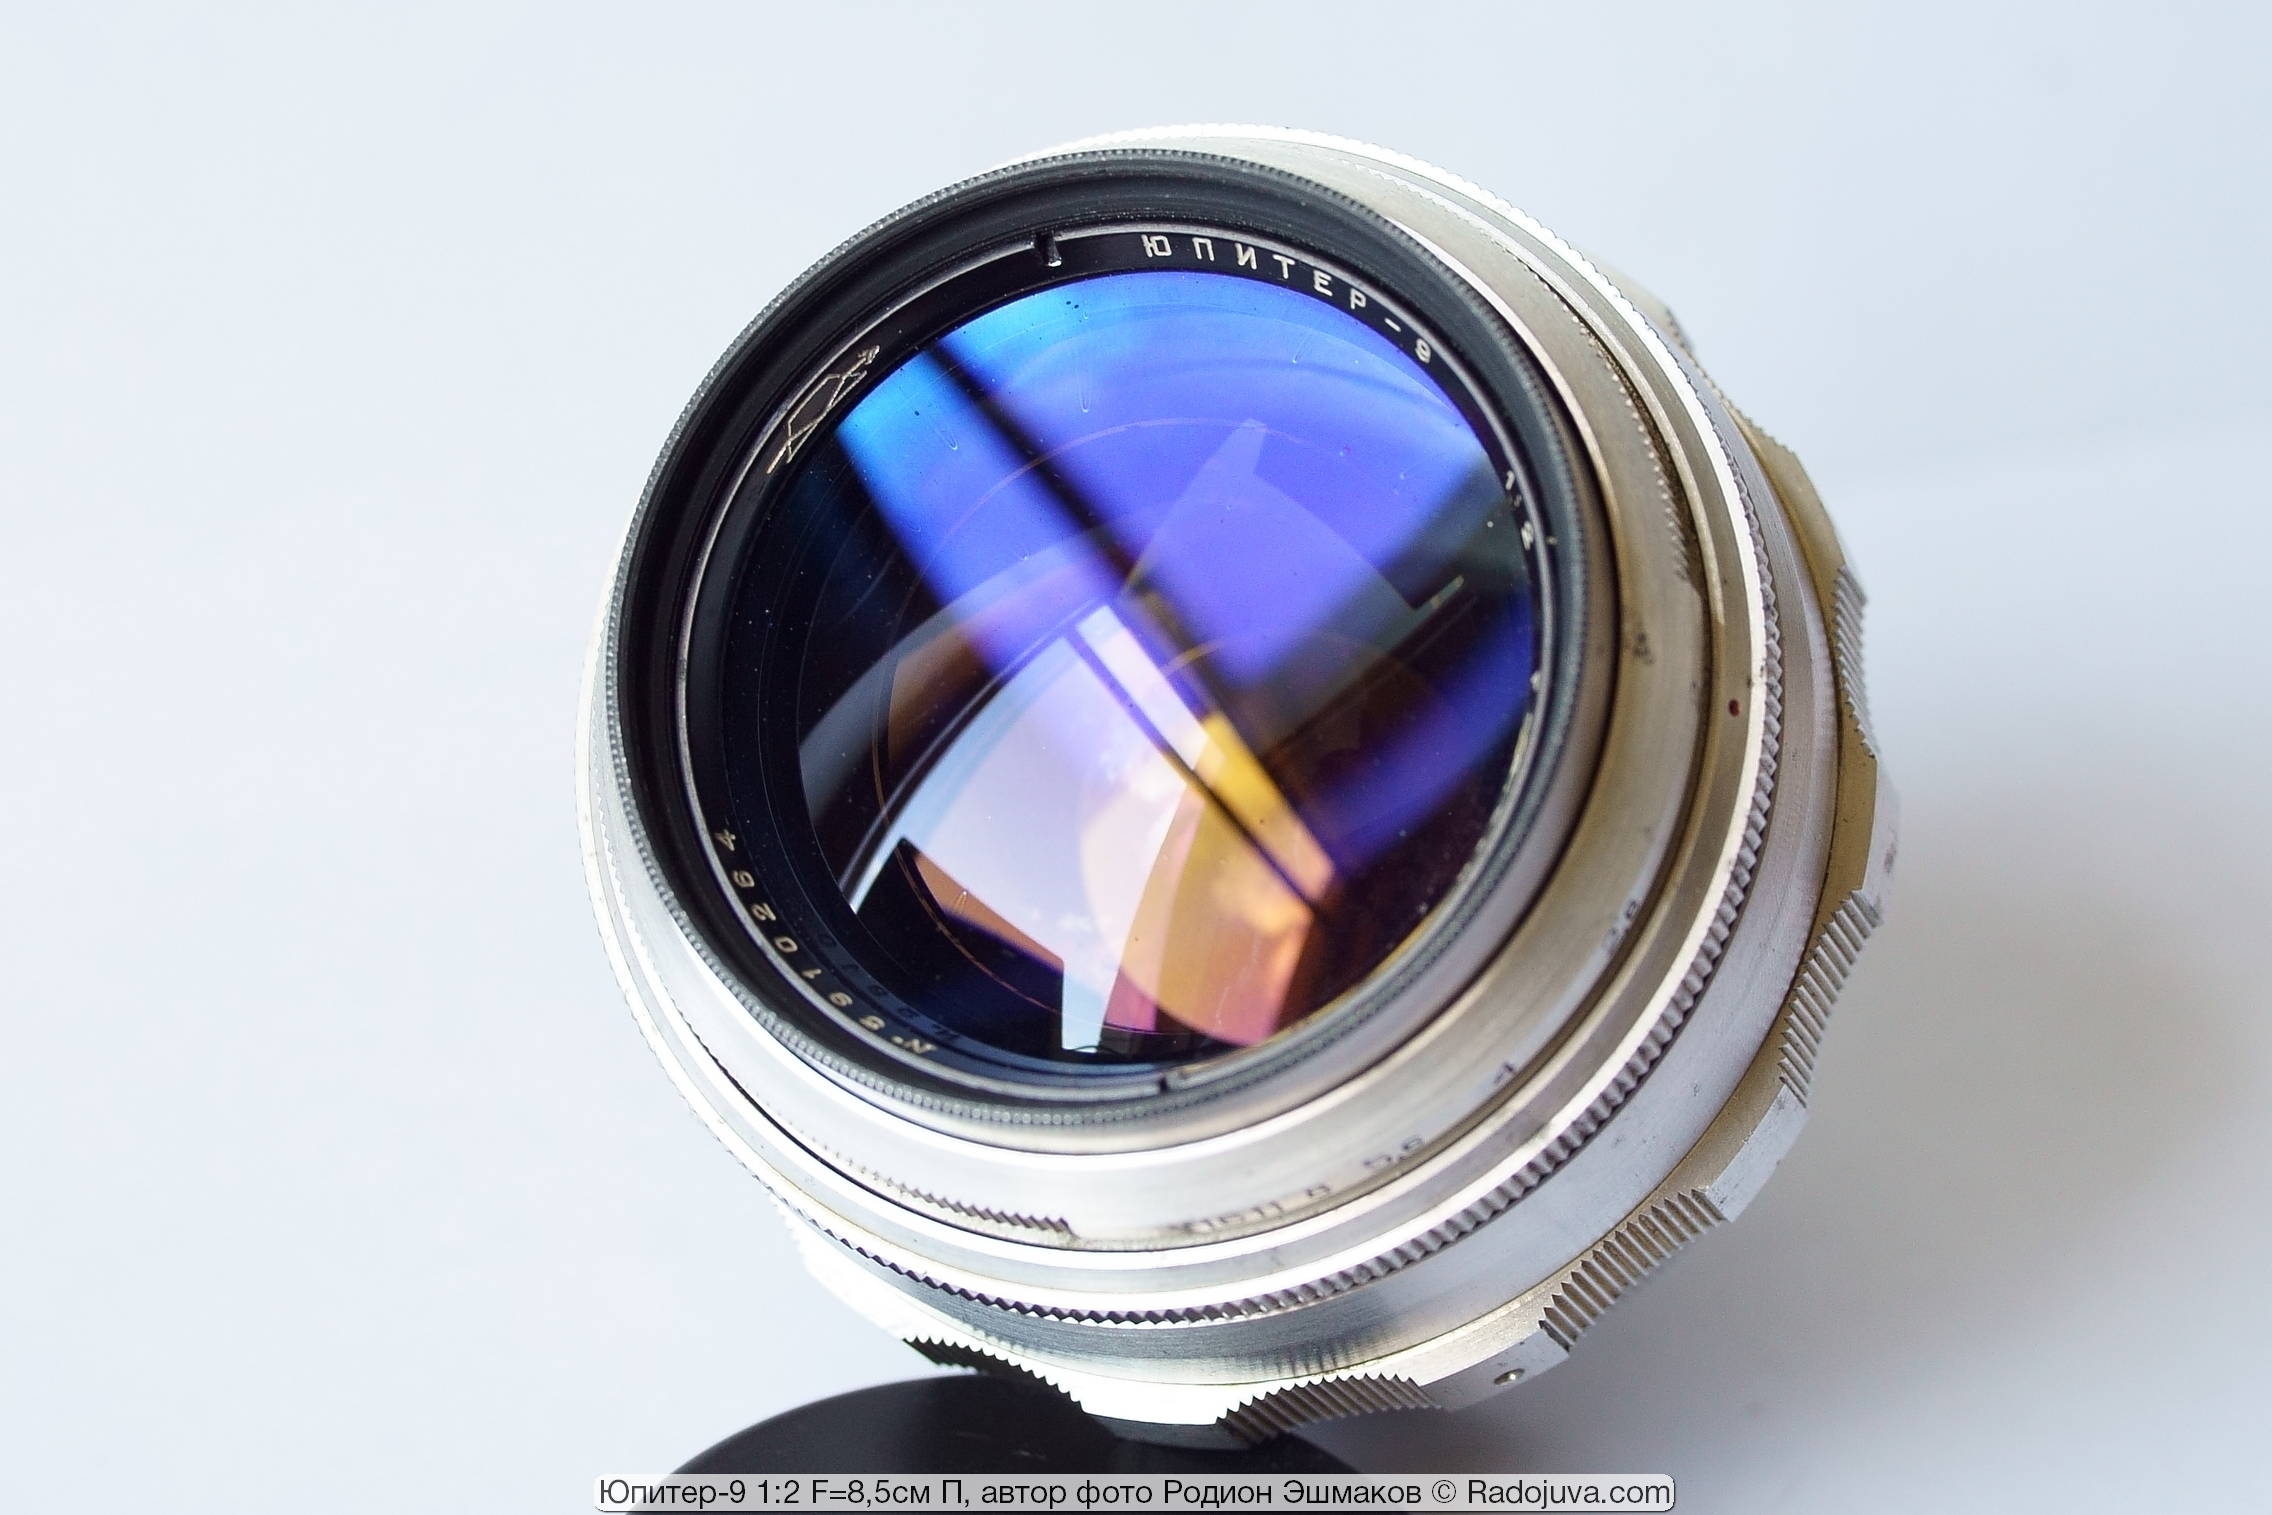 La vista de la gran lente frontal convexa de la lente Jupiter-9 es bastante estética.